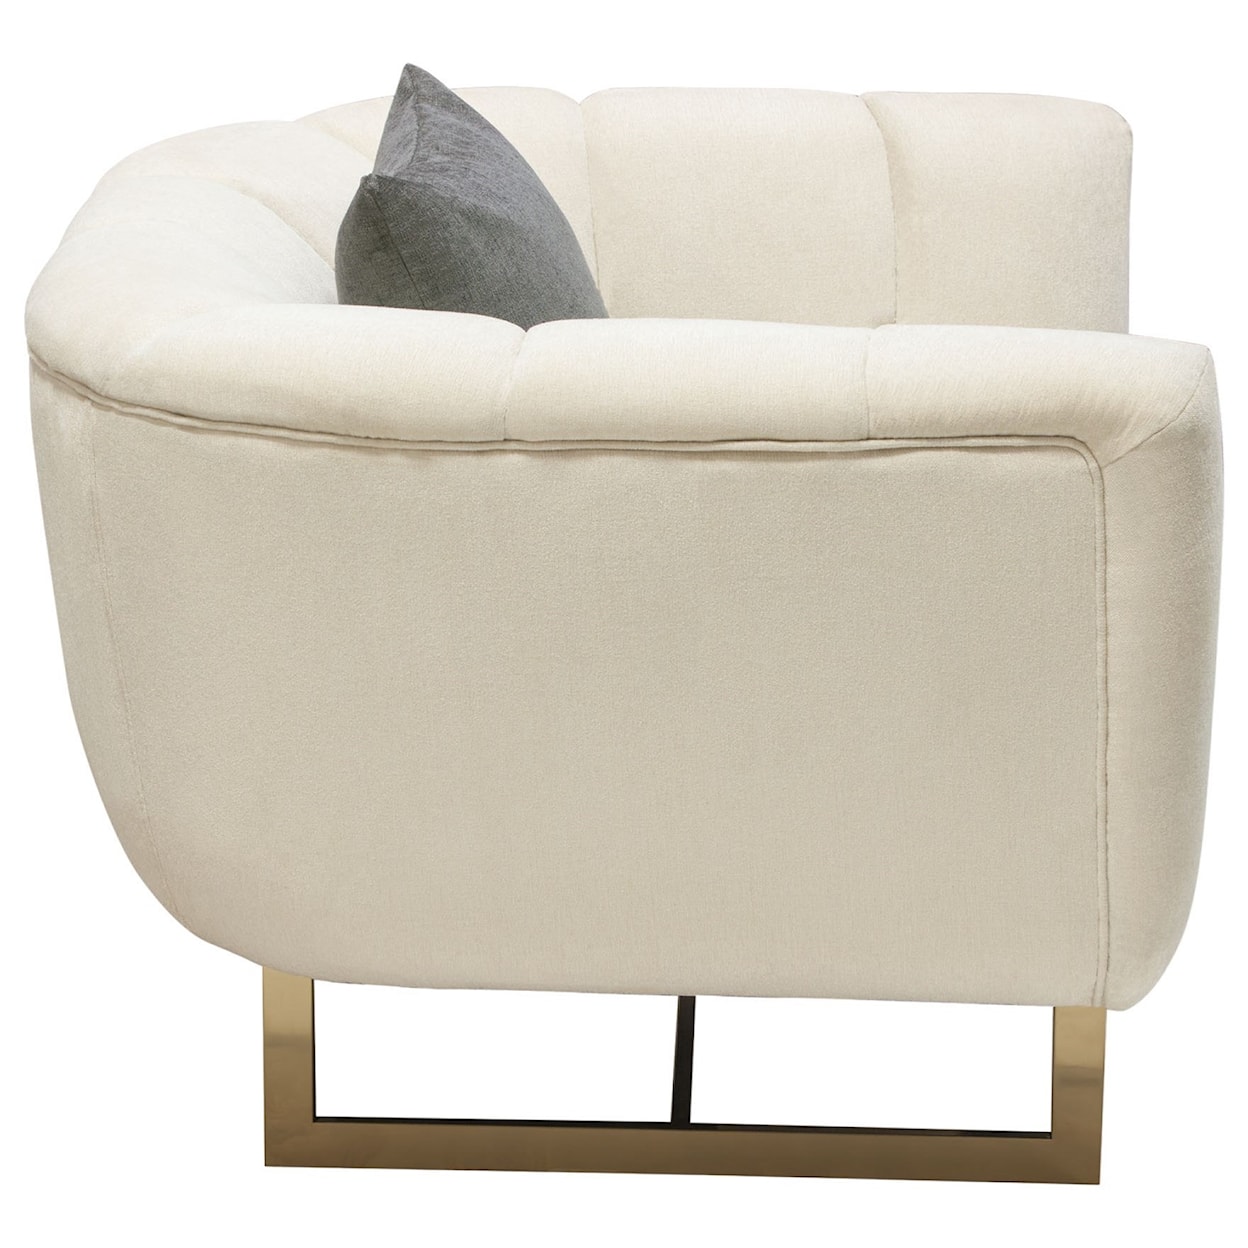 Diamond Sofa Venus Chair